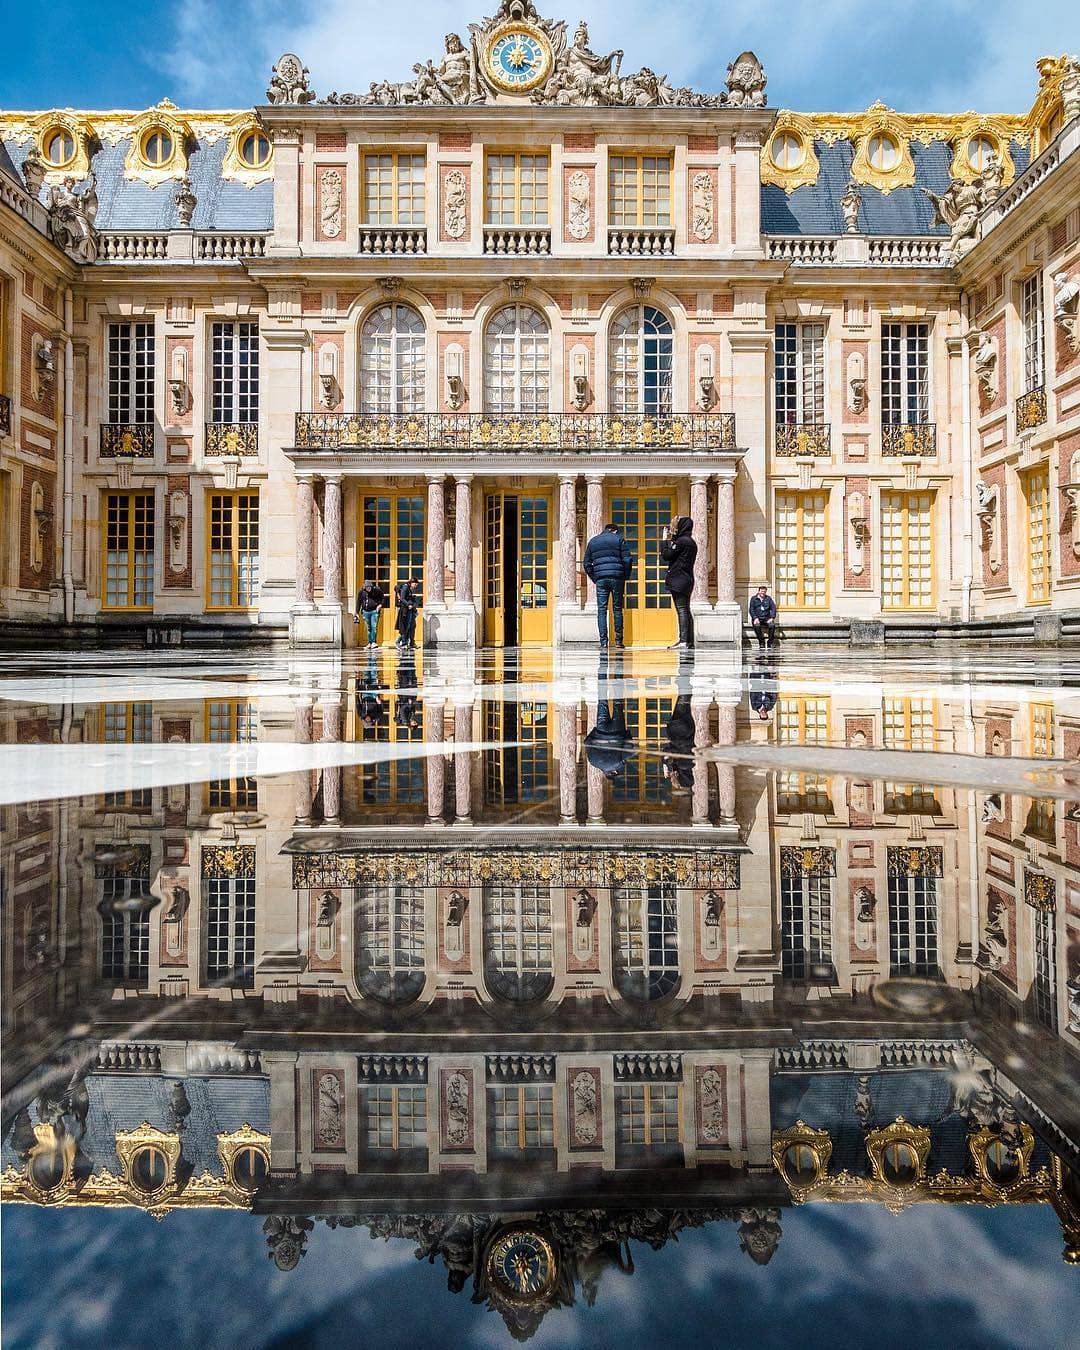 Про версаль. Версаль дворец Франция. Дворцовый комплекс Версаль. Версаль дворцово-парковый ансамбль во Франции. Версальский дворец пригород Парижа Франция.